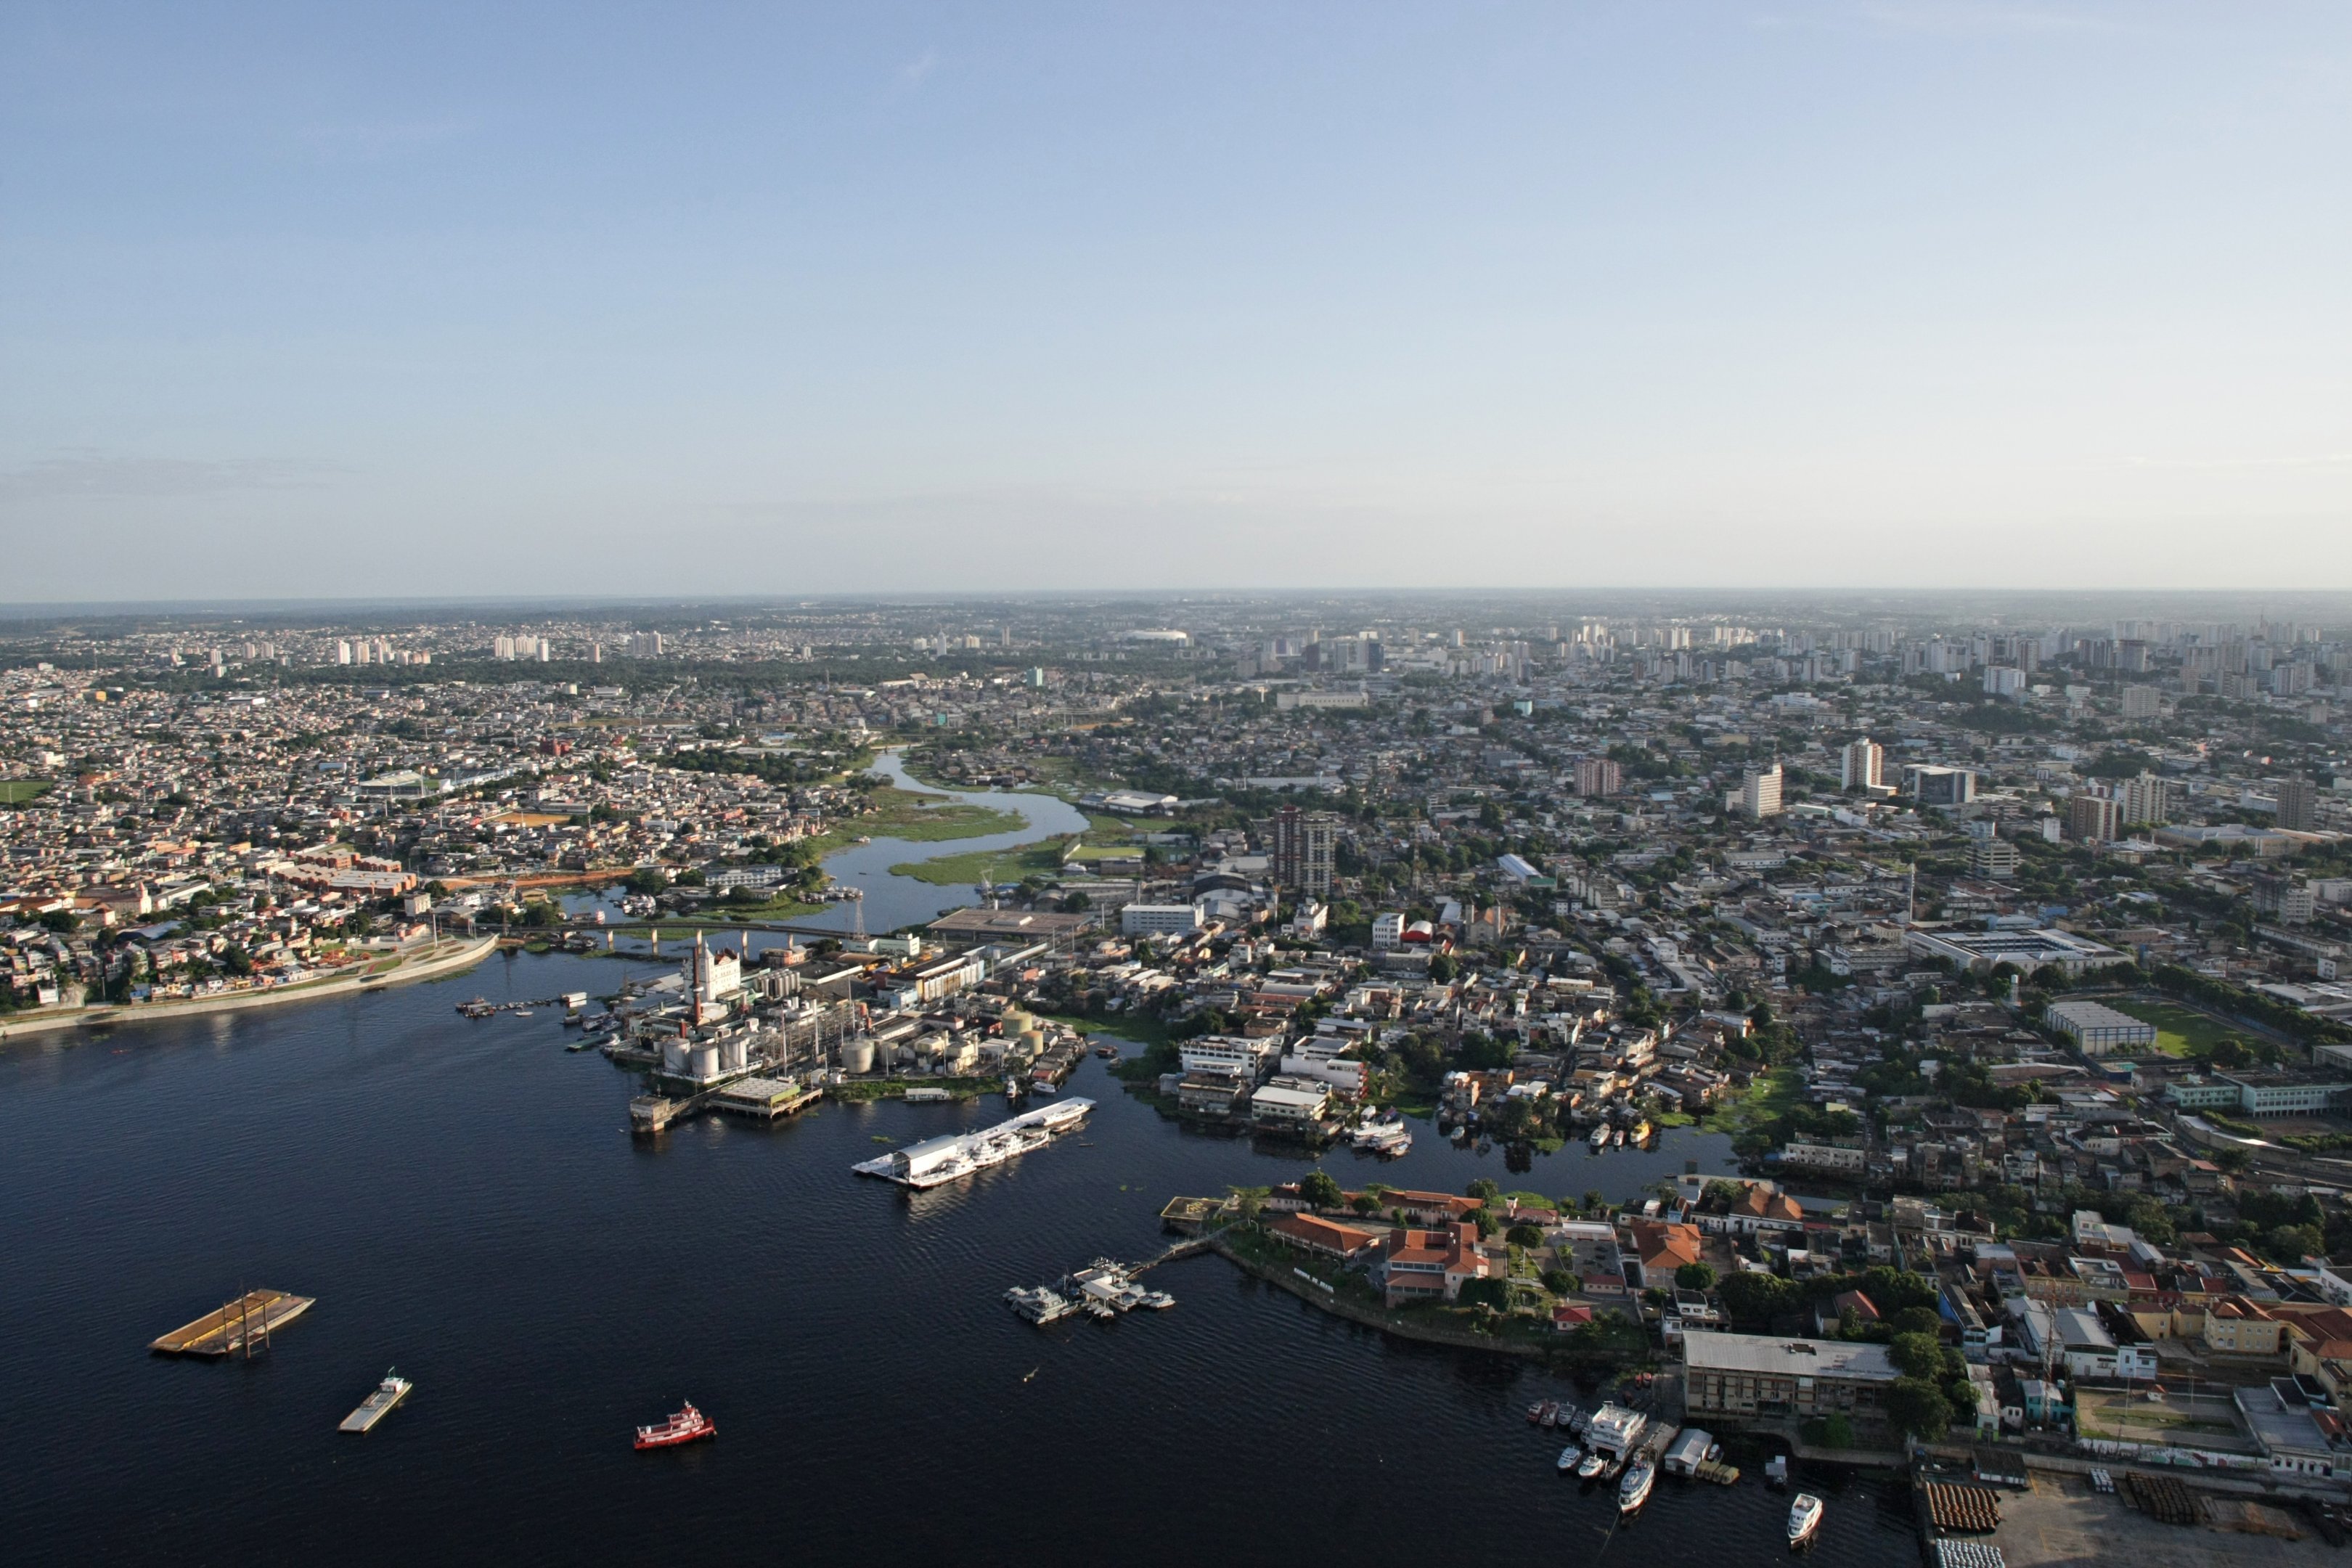 Vista aérea do centro da cidade de Manaus, mostrando a área da manaus moderna e o Rio Negro.